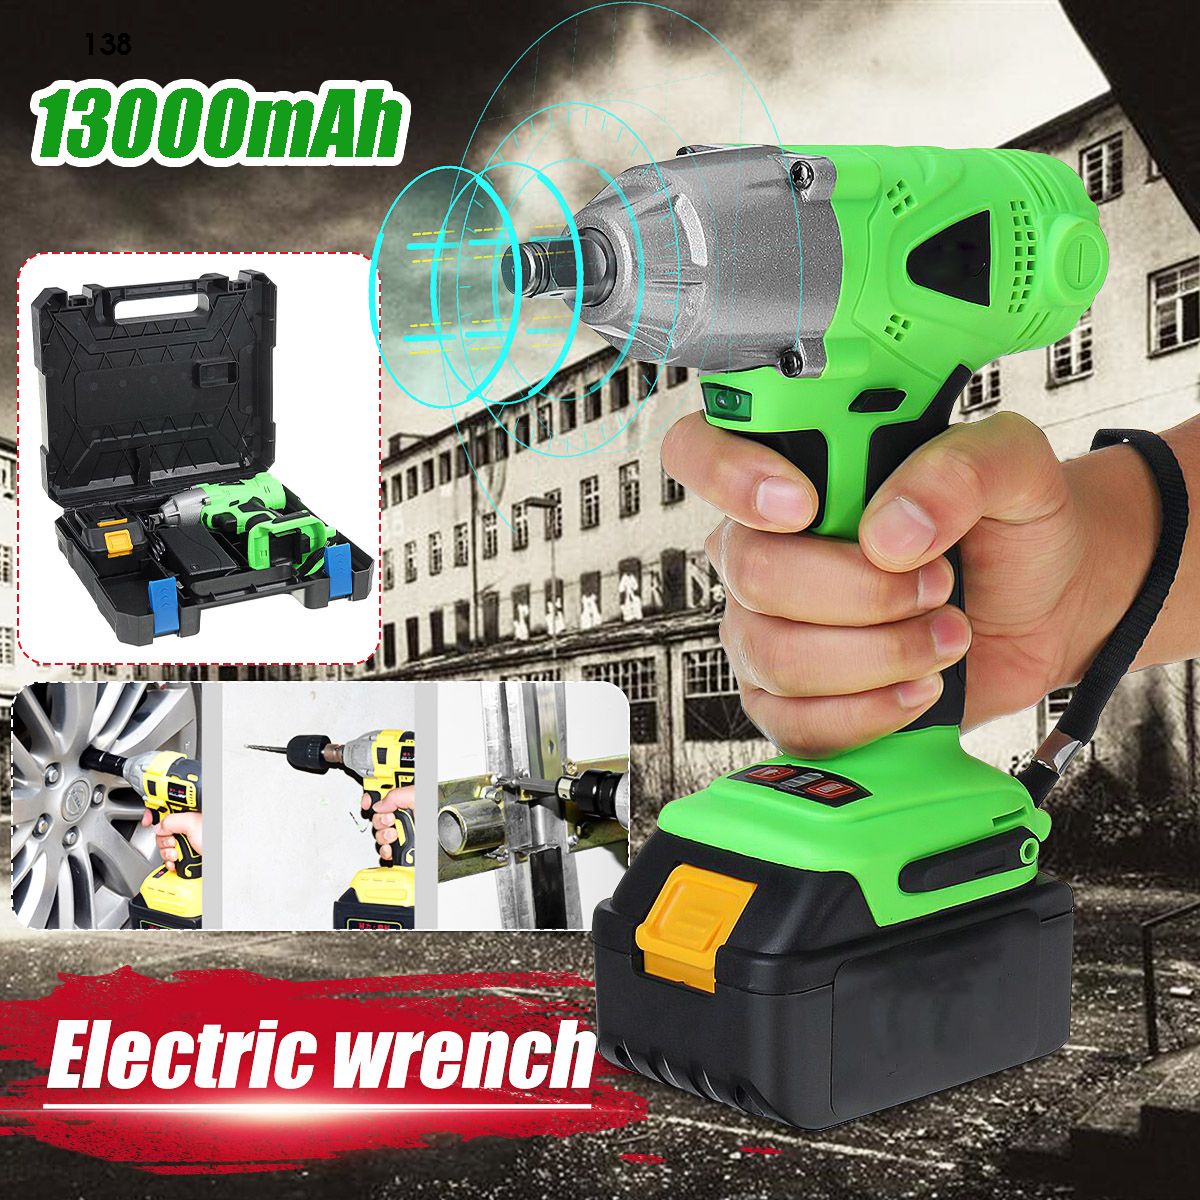 280nm-13000mAh-Li-Battery-Electric-Wrench-Car-Repair-Electric-Drill-Screwdriver-1611454